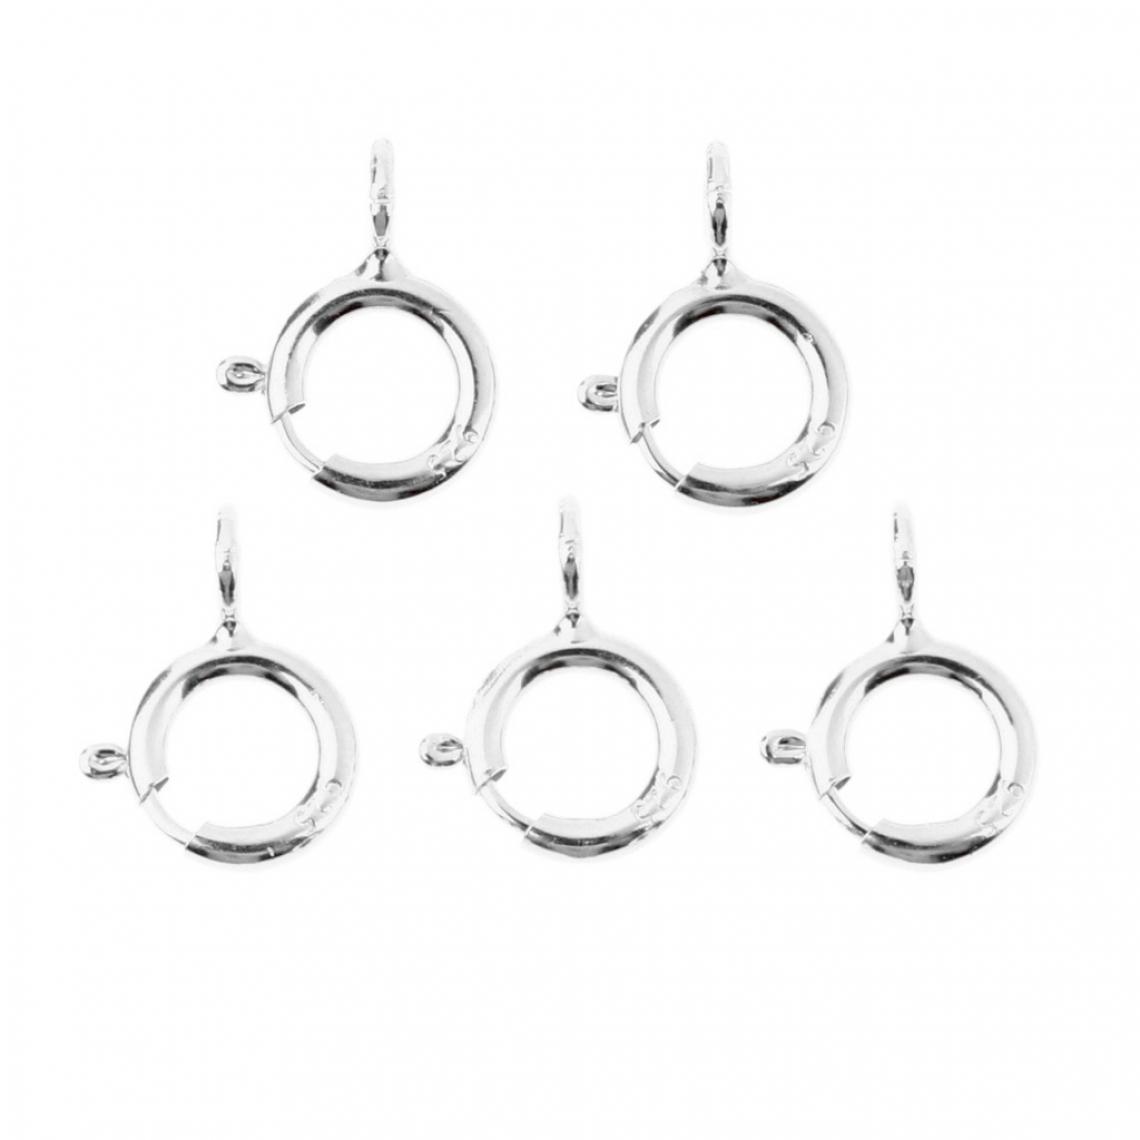 marque generique - 5pcs printemps anneaux fermoirs bijoux fabrication de connecteurs fermoirs 5mm platine - Perles